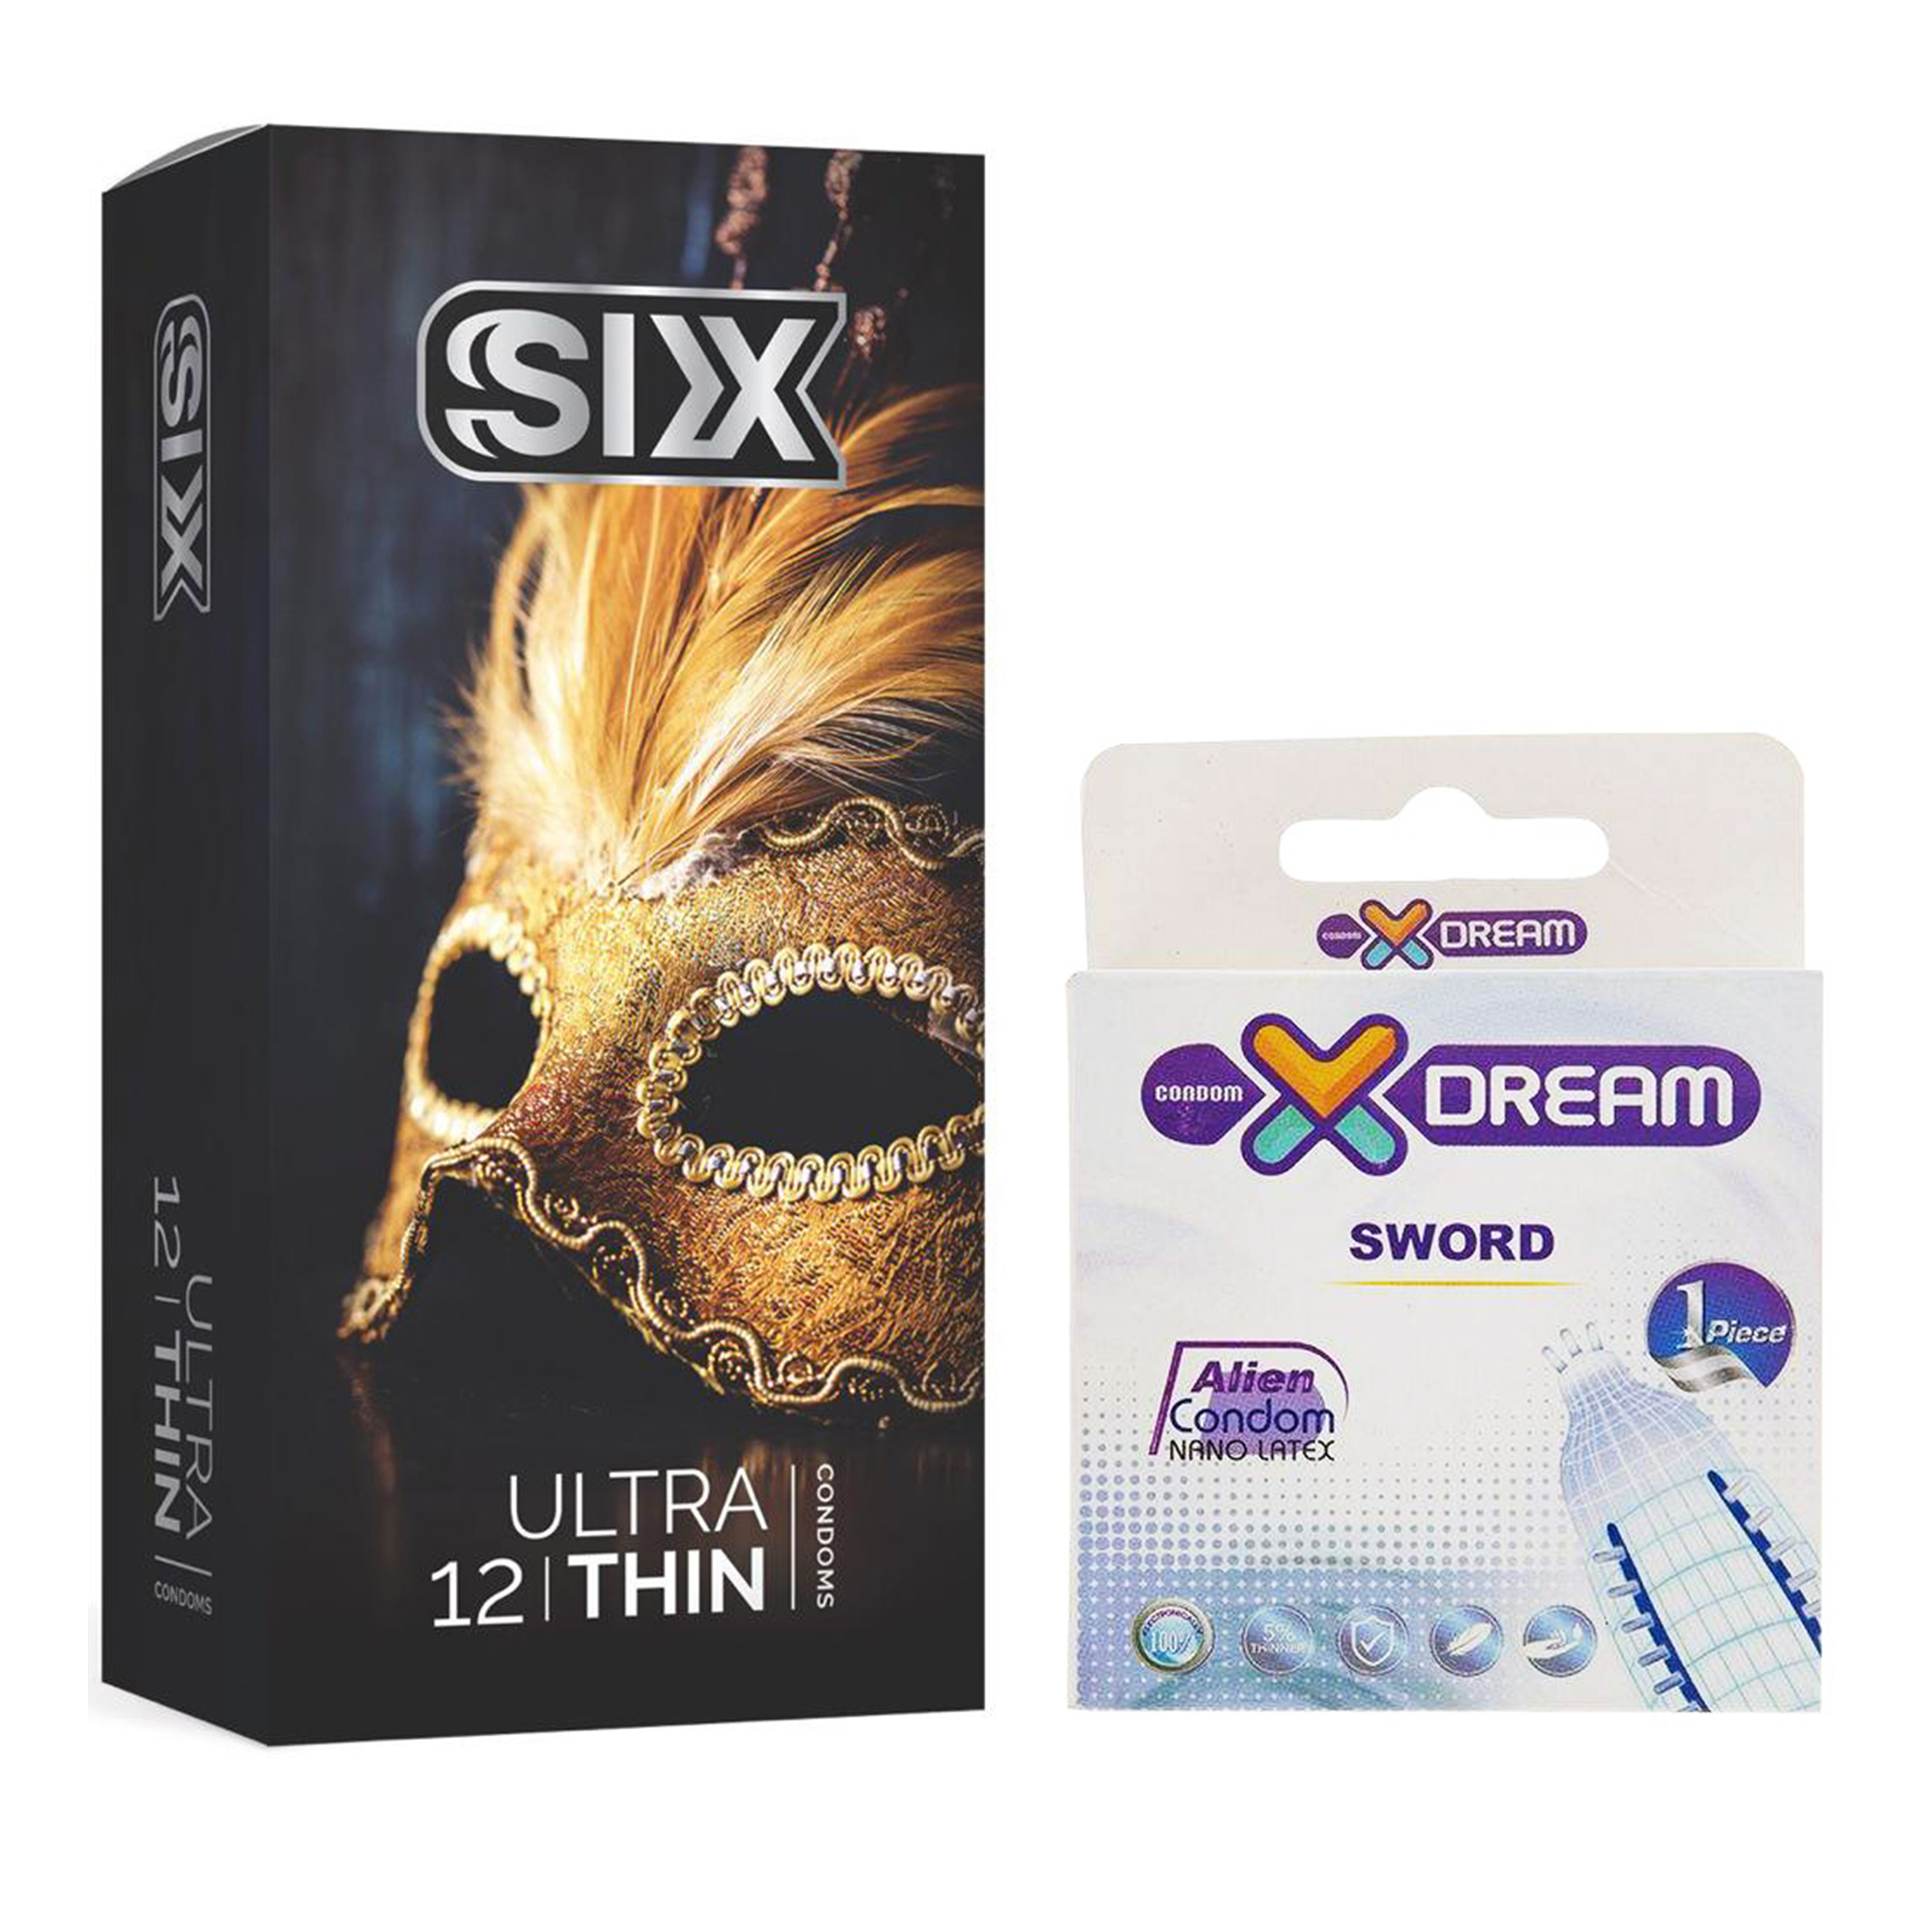 کاندوم سیکس مدل Ultra Thin بسته 12 عددی به همراه کاندوم ایکس دریم مدل Sword